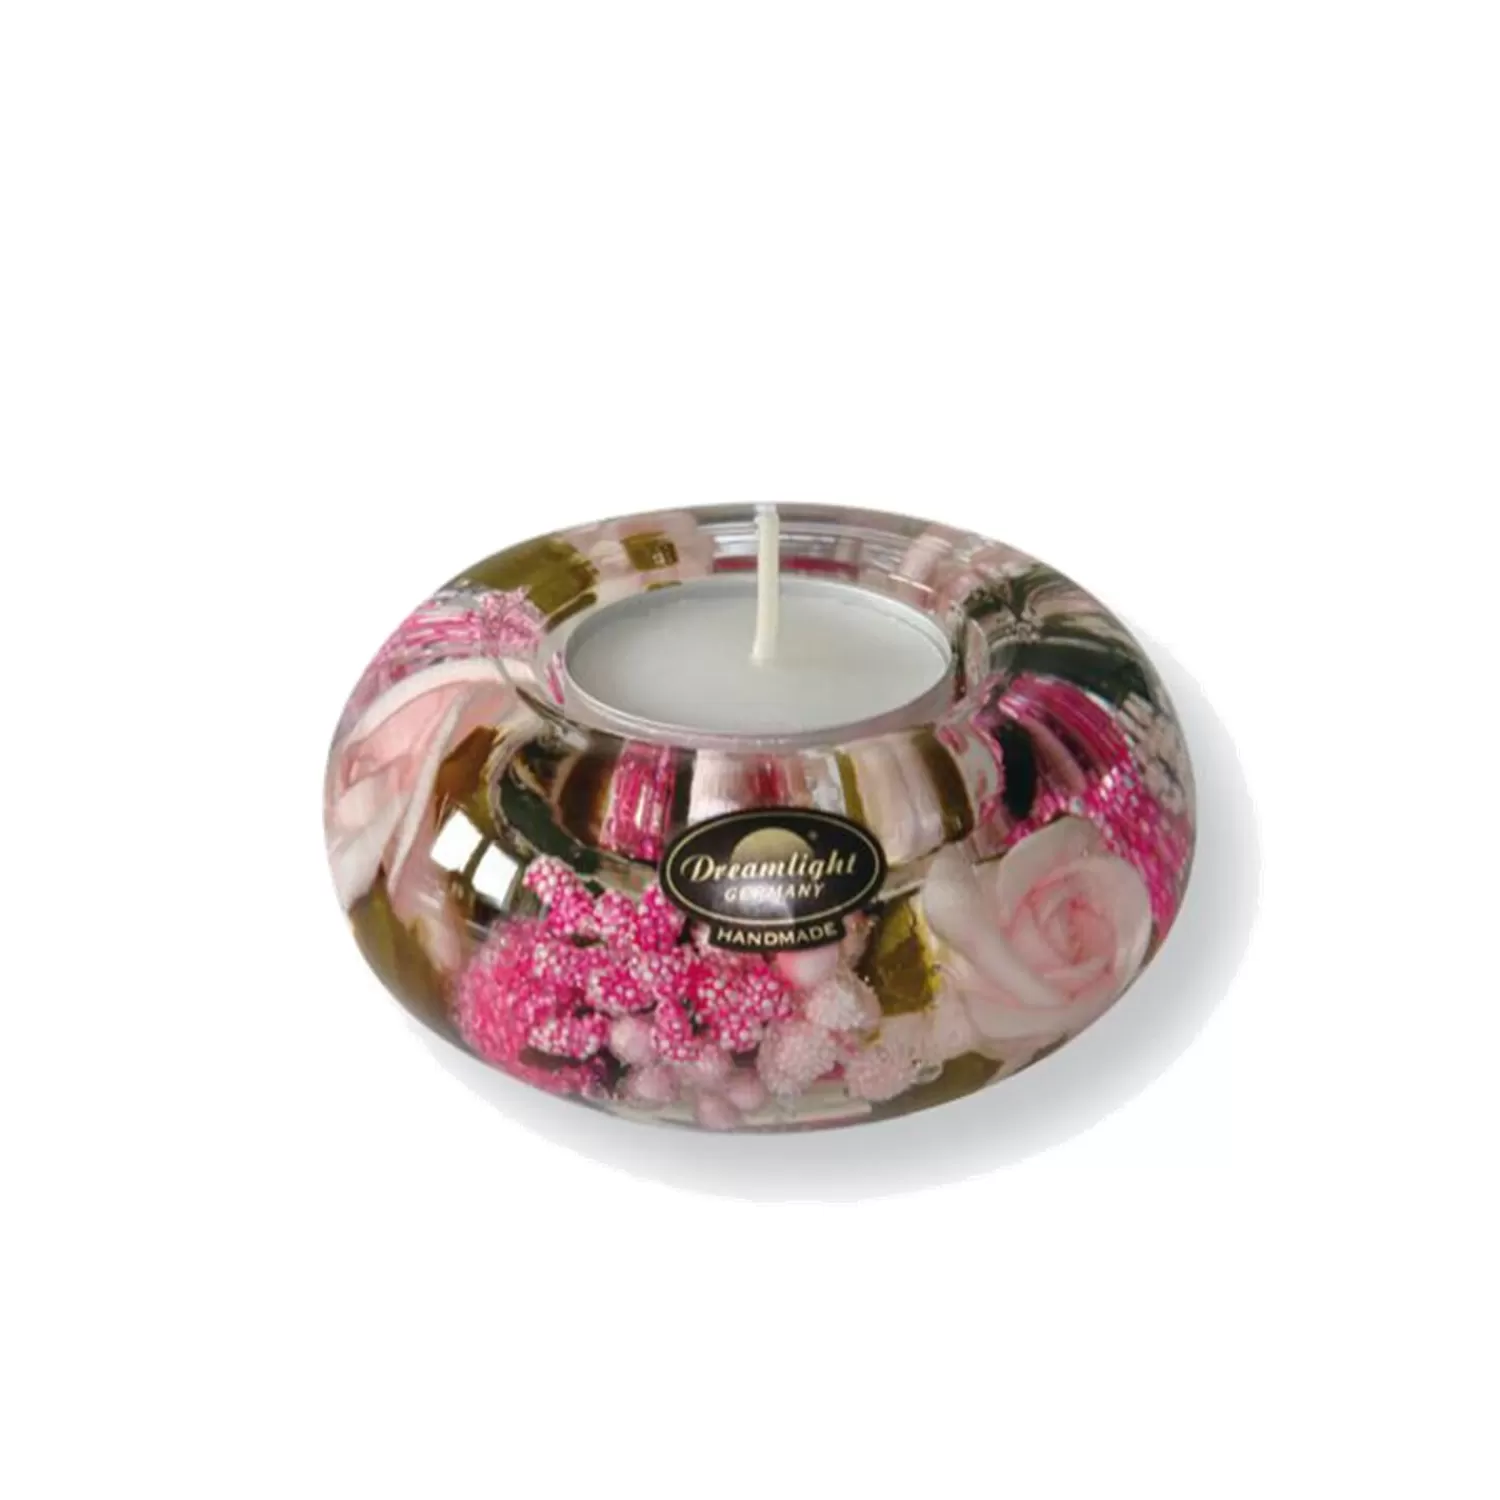 Käthe Wohlfahrt Kerzen & Teelichthalter<Dreamlight "Little Rose" (Ufo Smart)